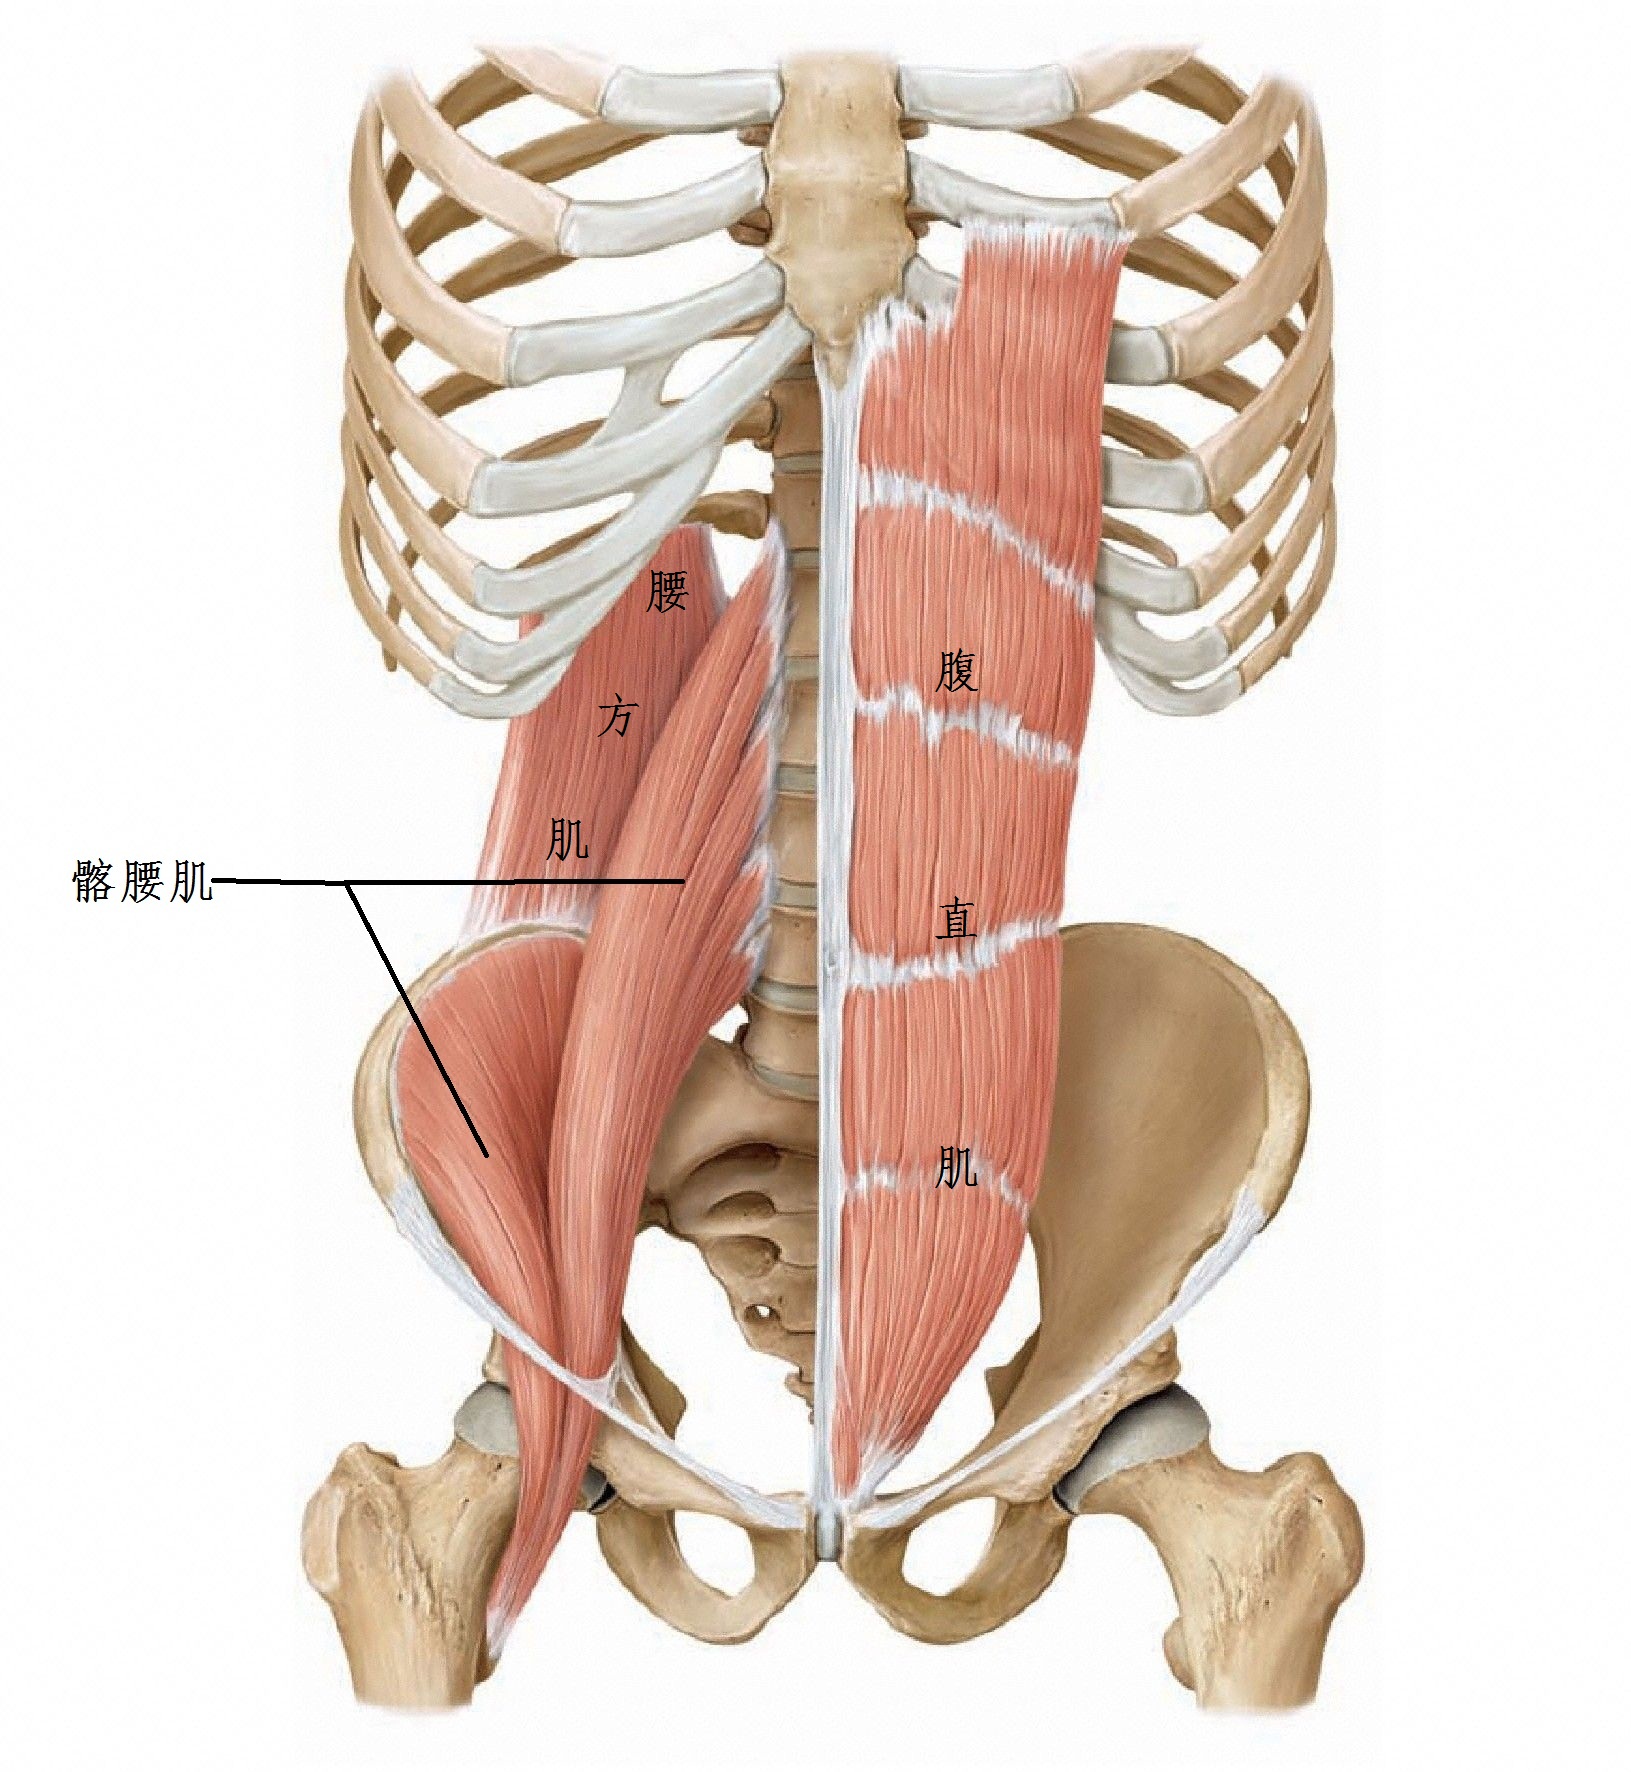 髂腰肌上连腰椎和骨盆,下连大腿股骨